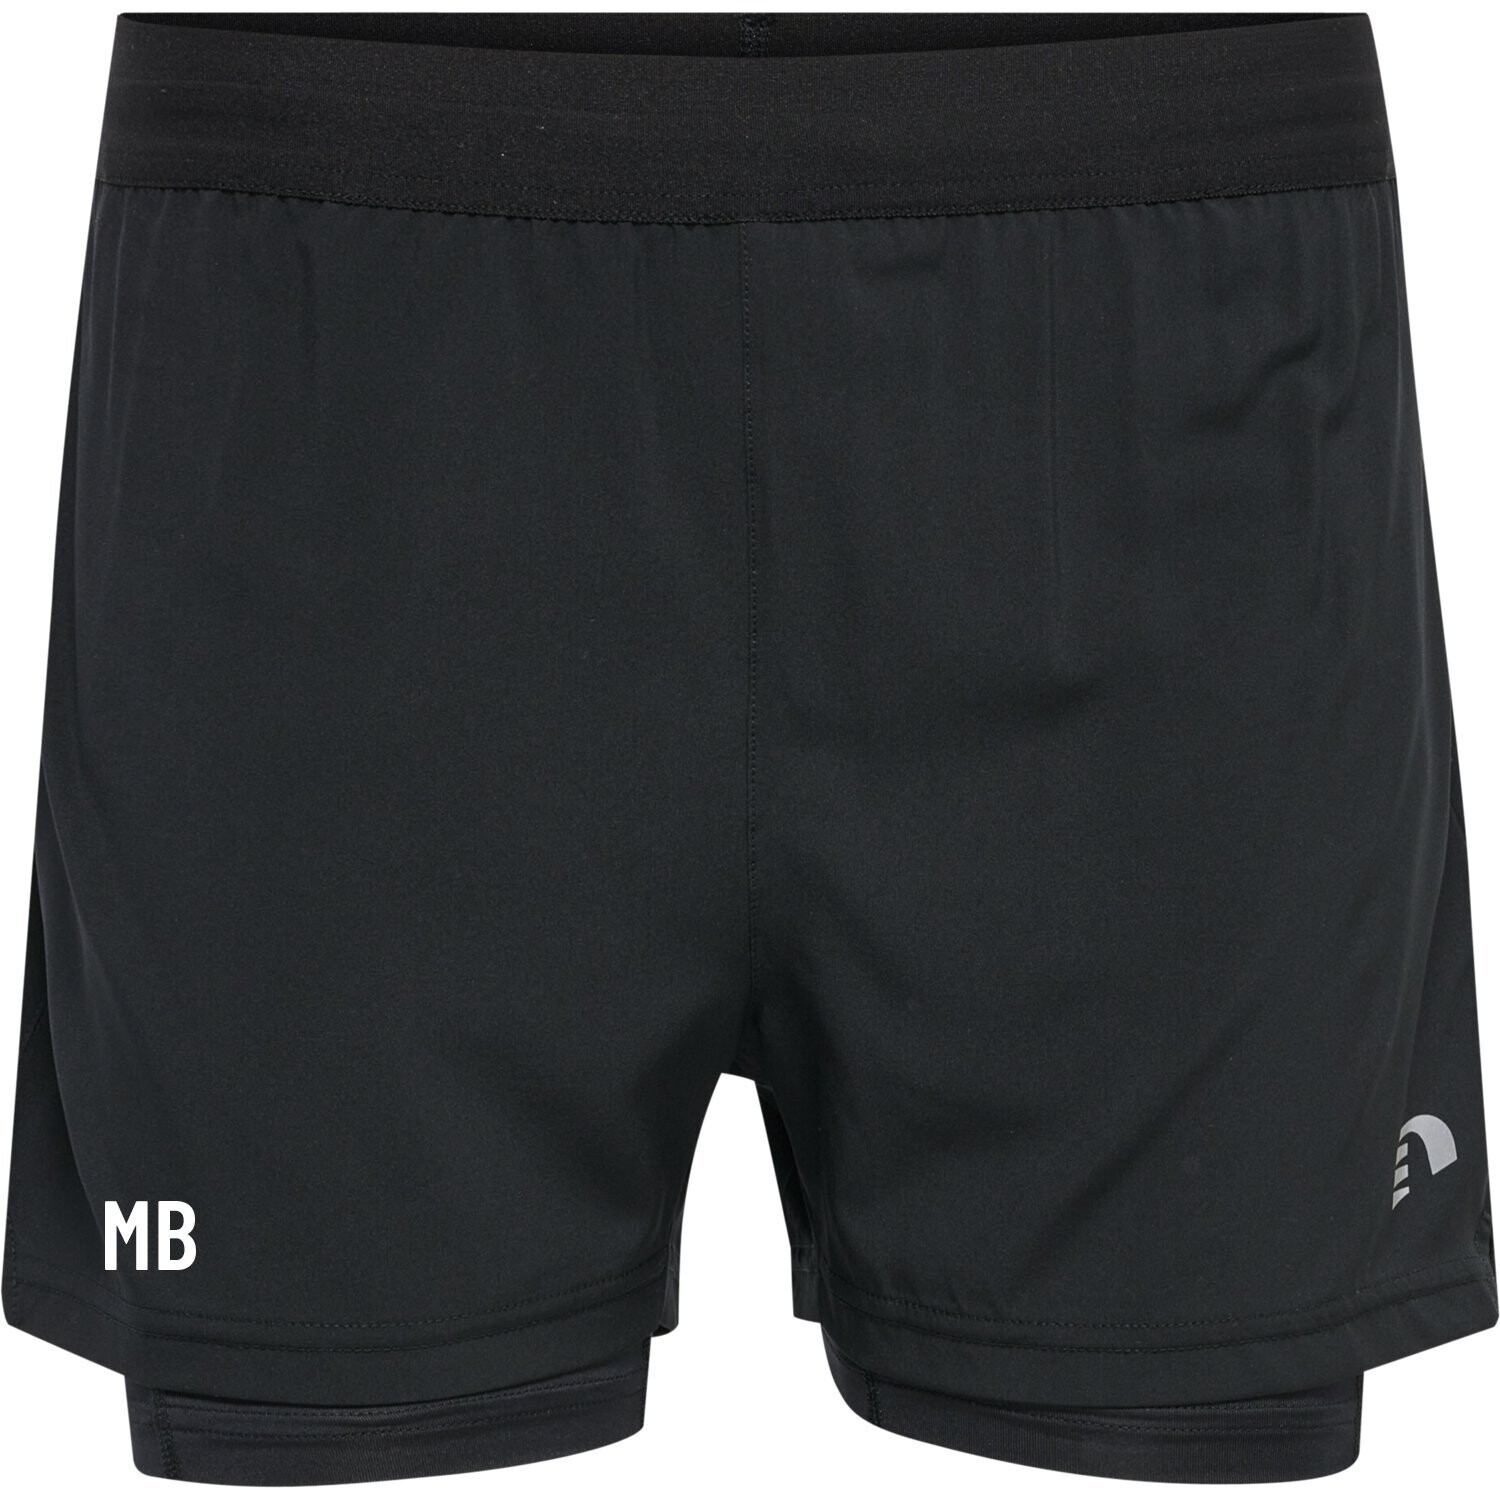 NEWLINE - Women´s 2-in-1 Shorts